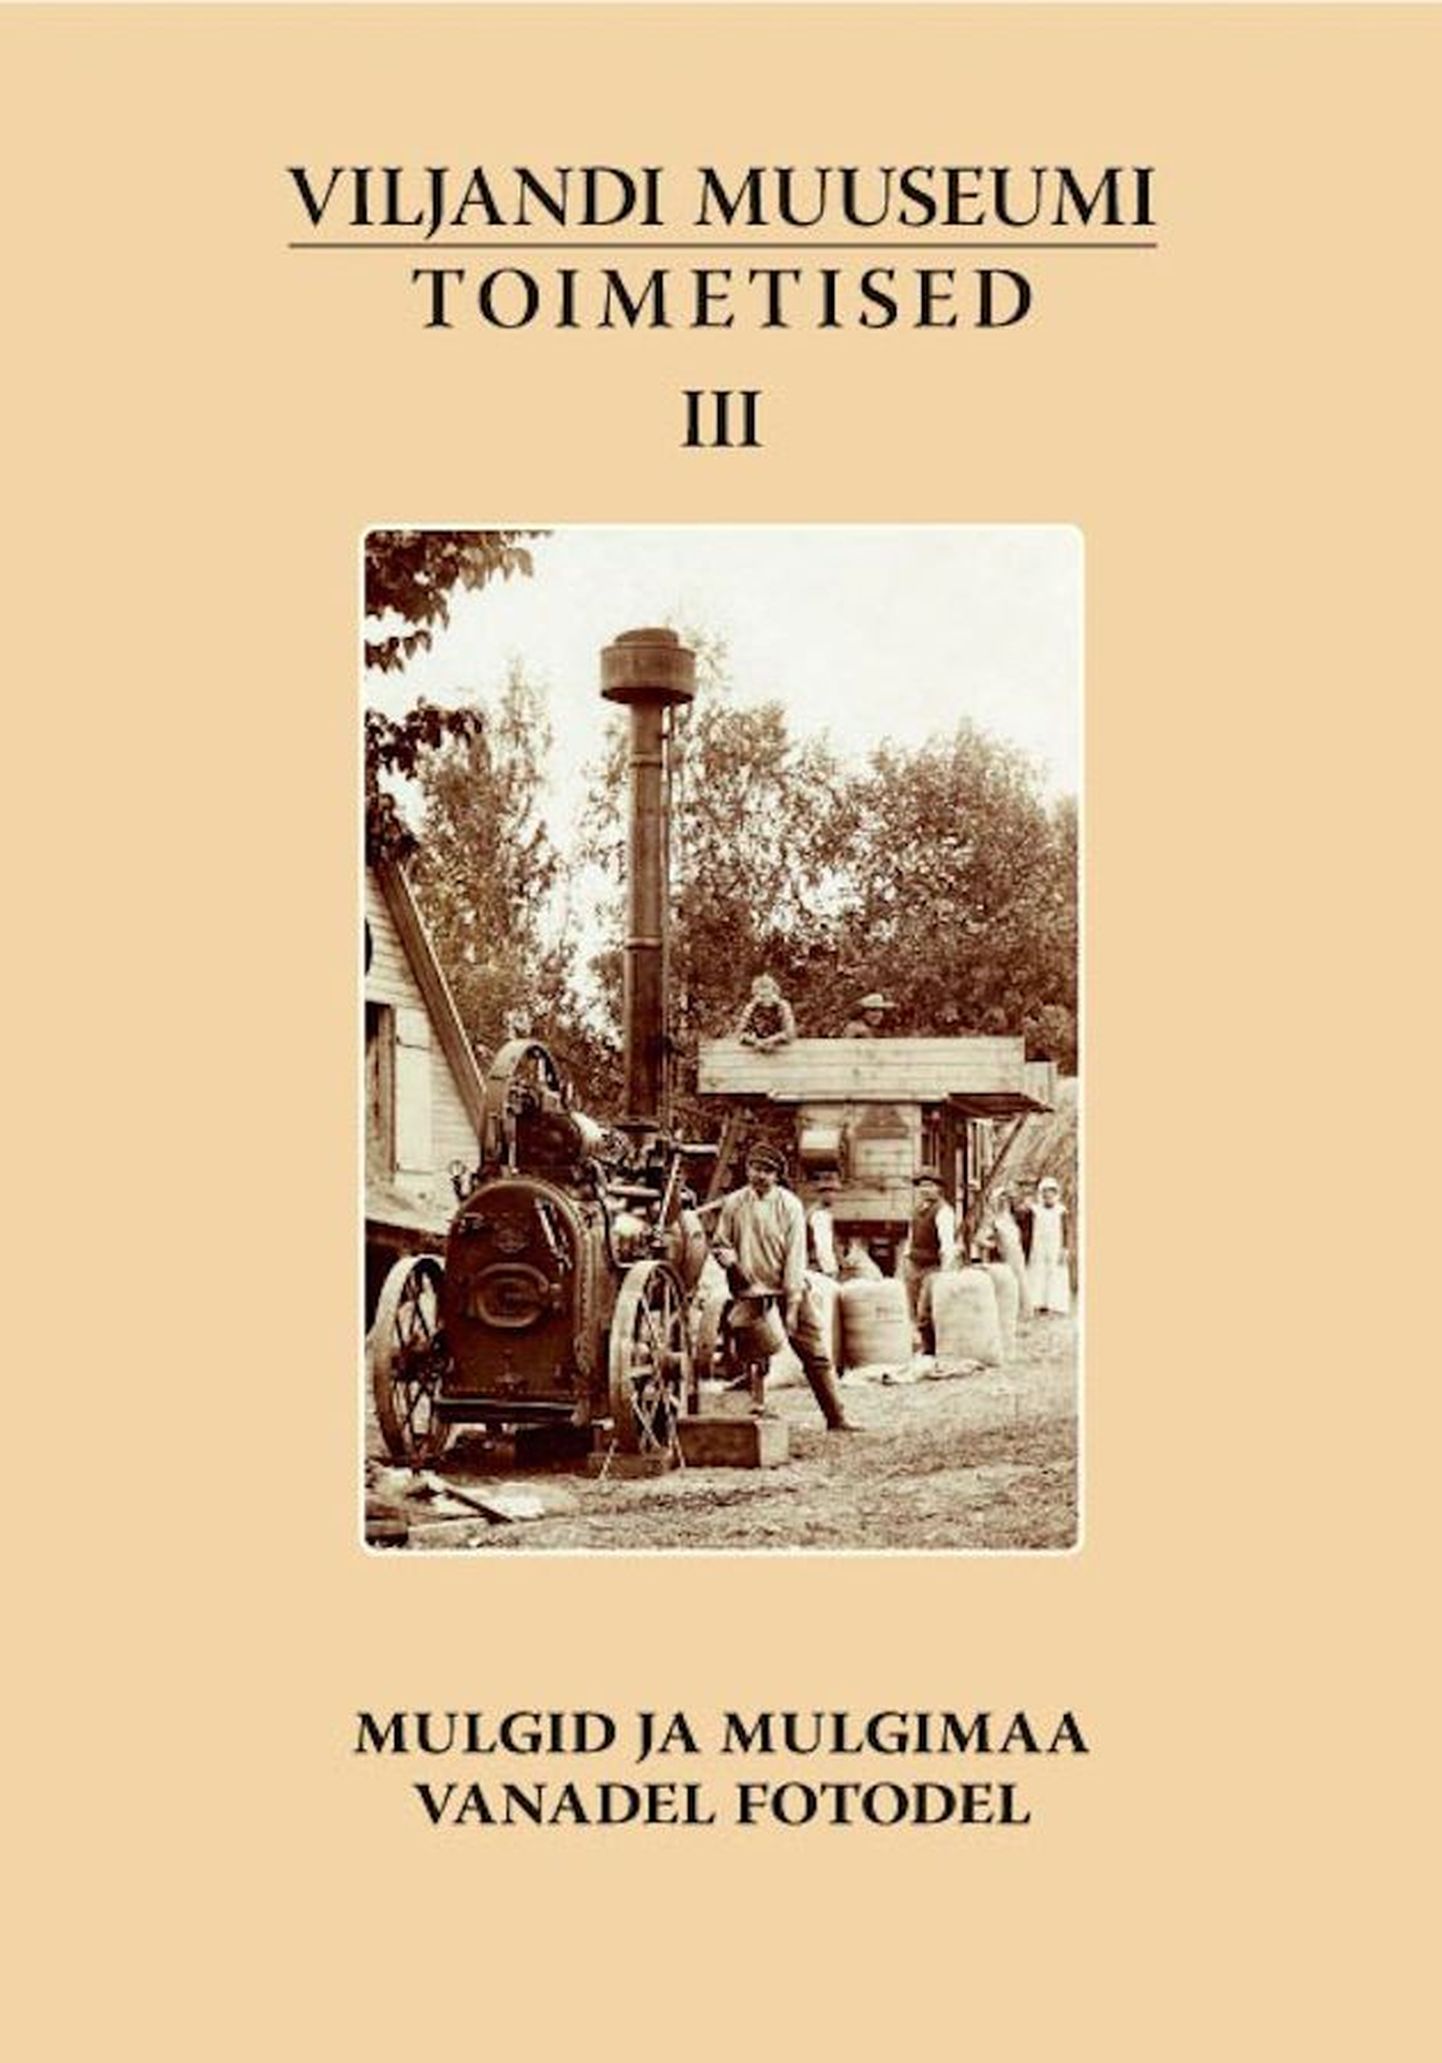 Viljandi muuseum tutvustab oma toimetiste kolmandat osa «Mulgid ja Mulgimaa vanadel fotodel».